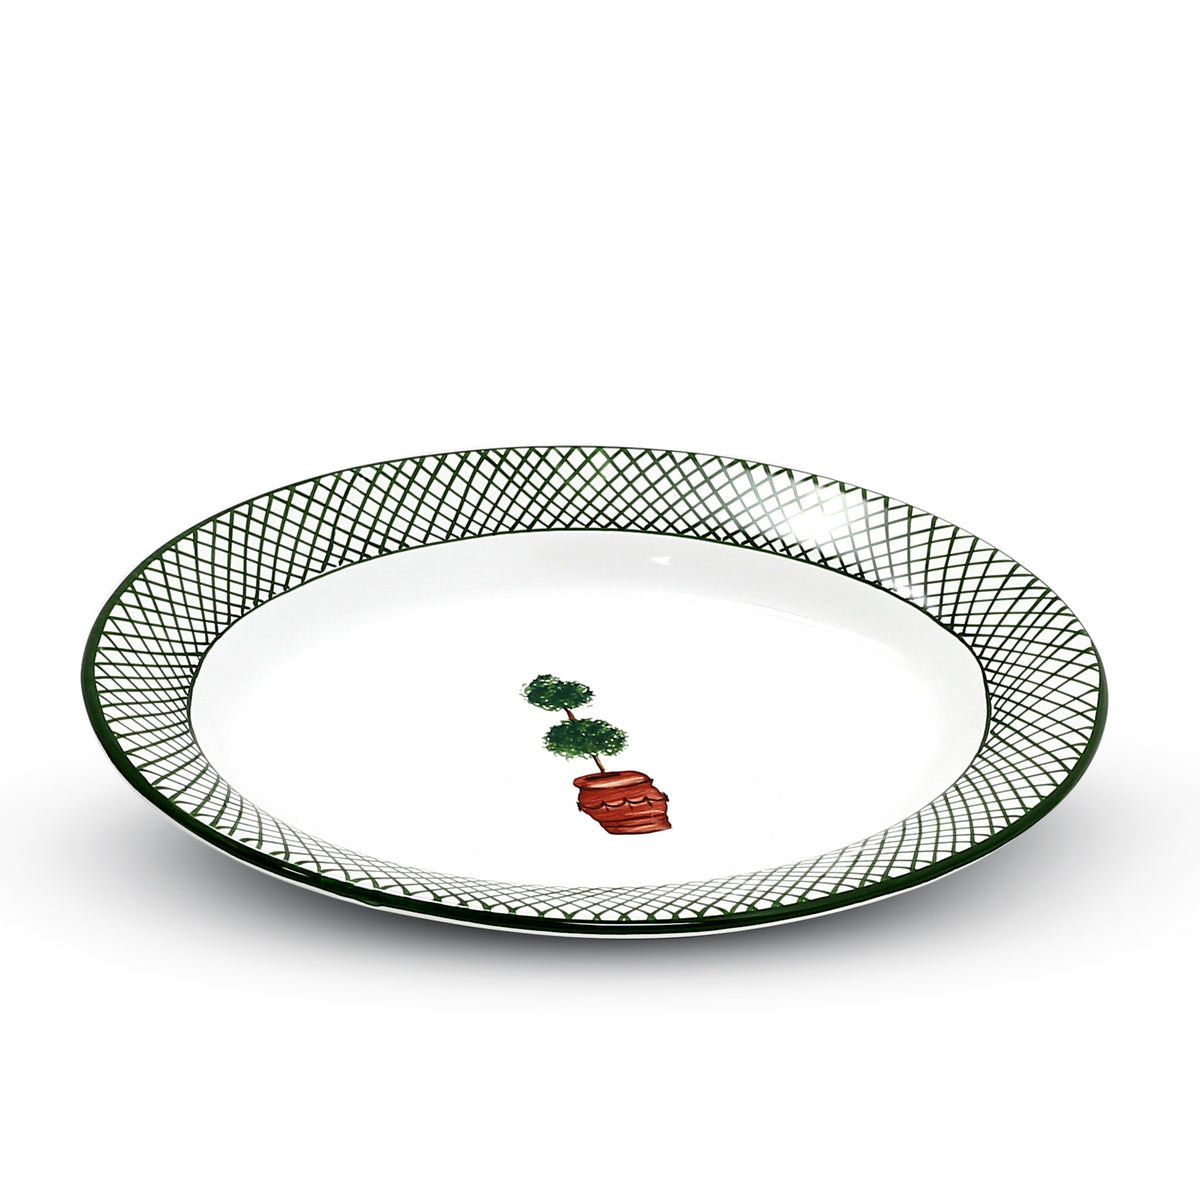 GIARDINO: Small Oval Plate [R] - Artistica.com